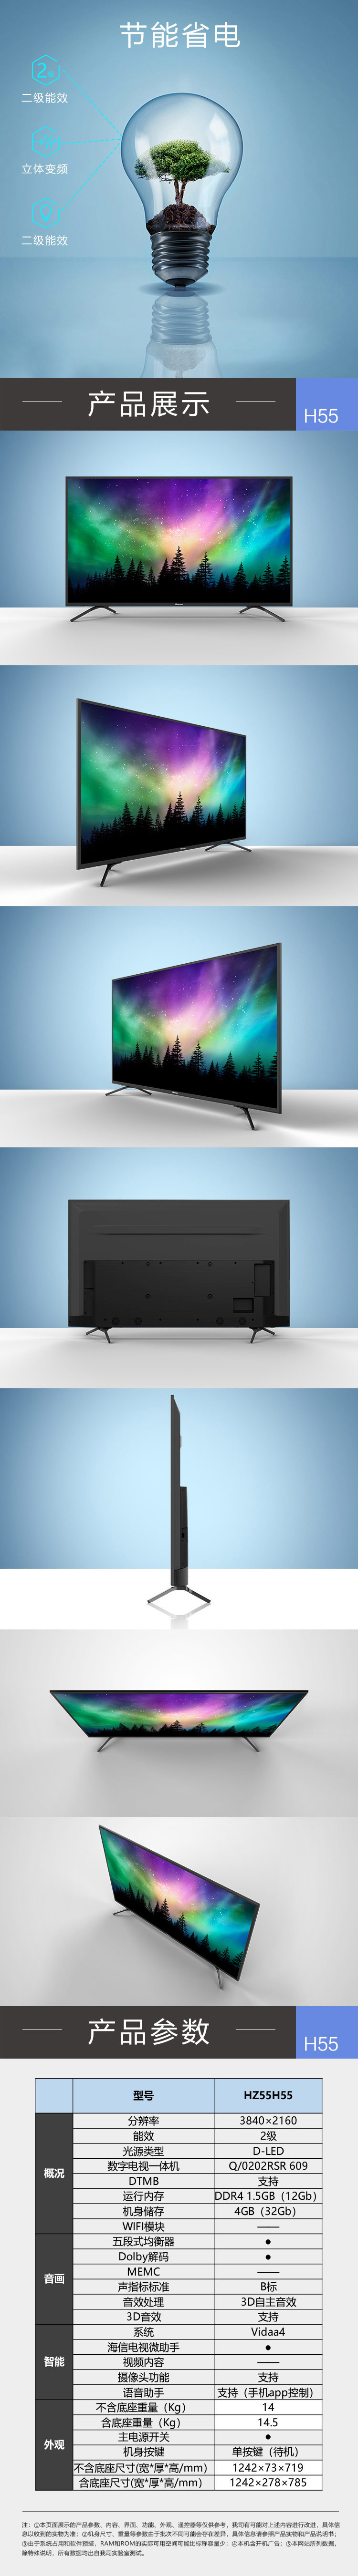 海信/Hisense HZ65H55 65英寸超高清4K 智能液晶平板电视